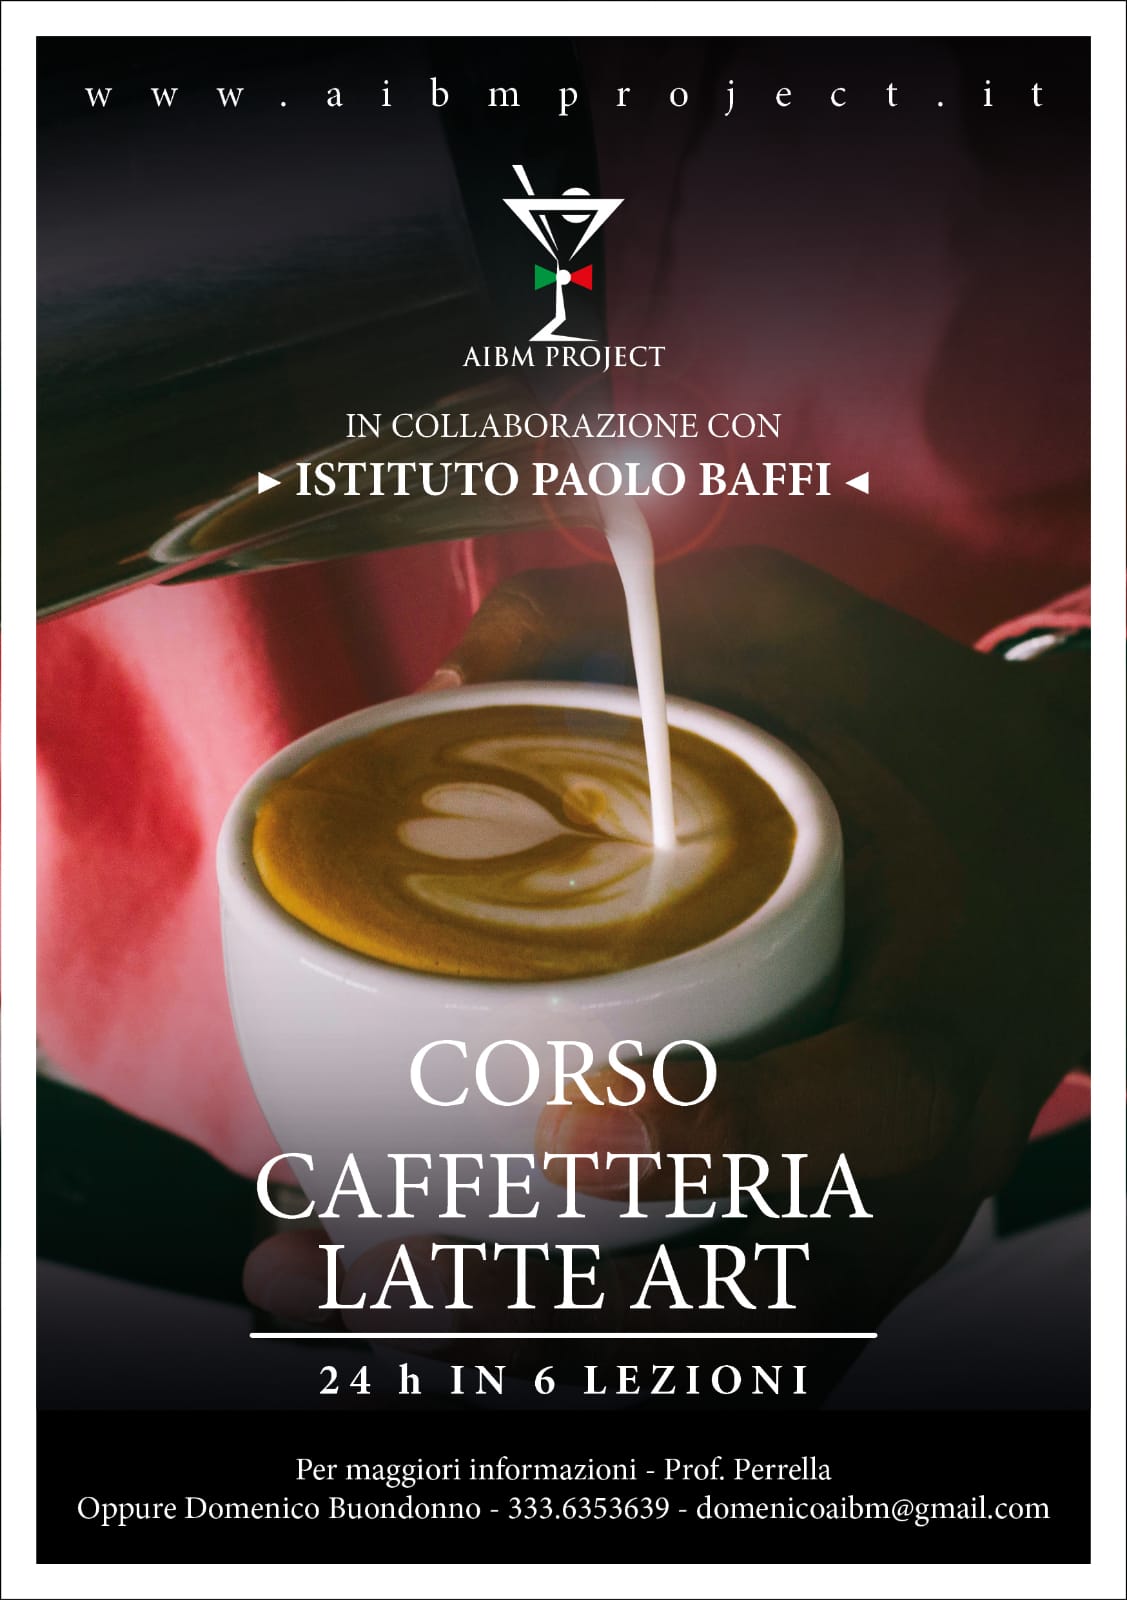 Locandina corso caffetteria "Latte Art" - 24 in 6 lezioni